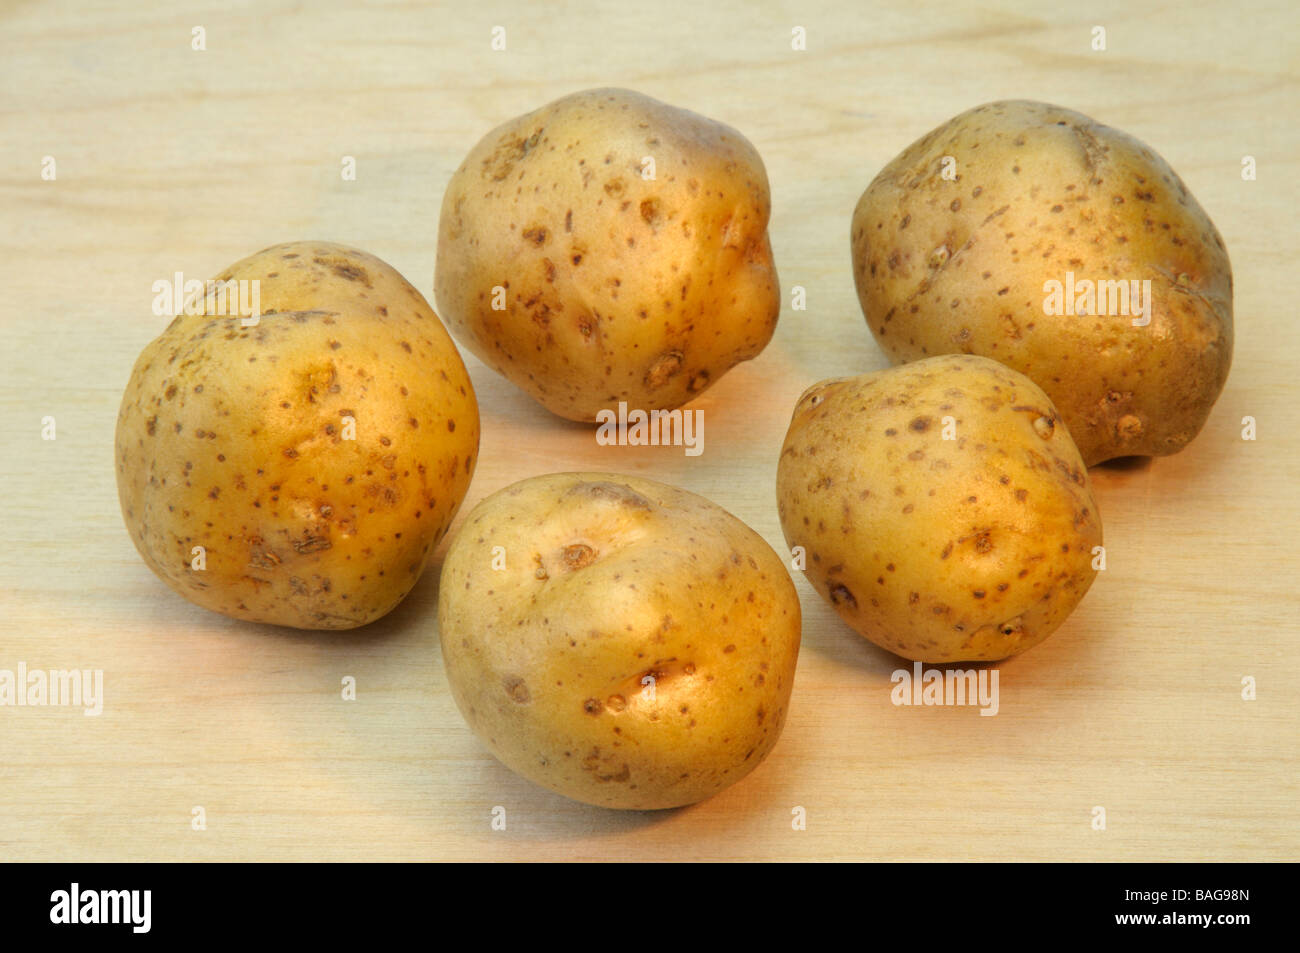 Potato (Solanum tuberosum), variety: La Bonnotte, studio picture Stock Photo